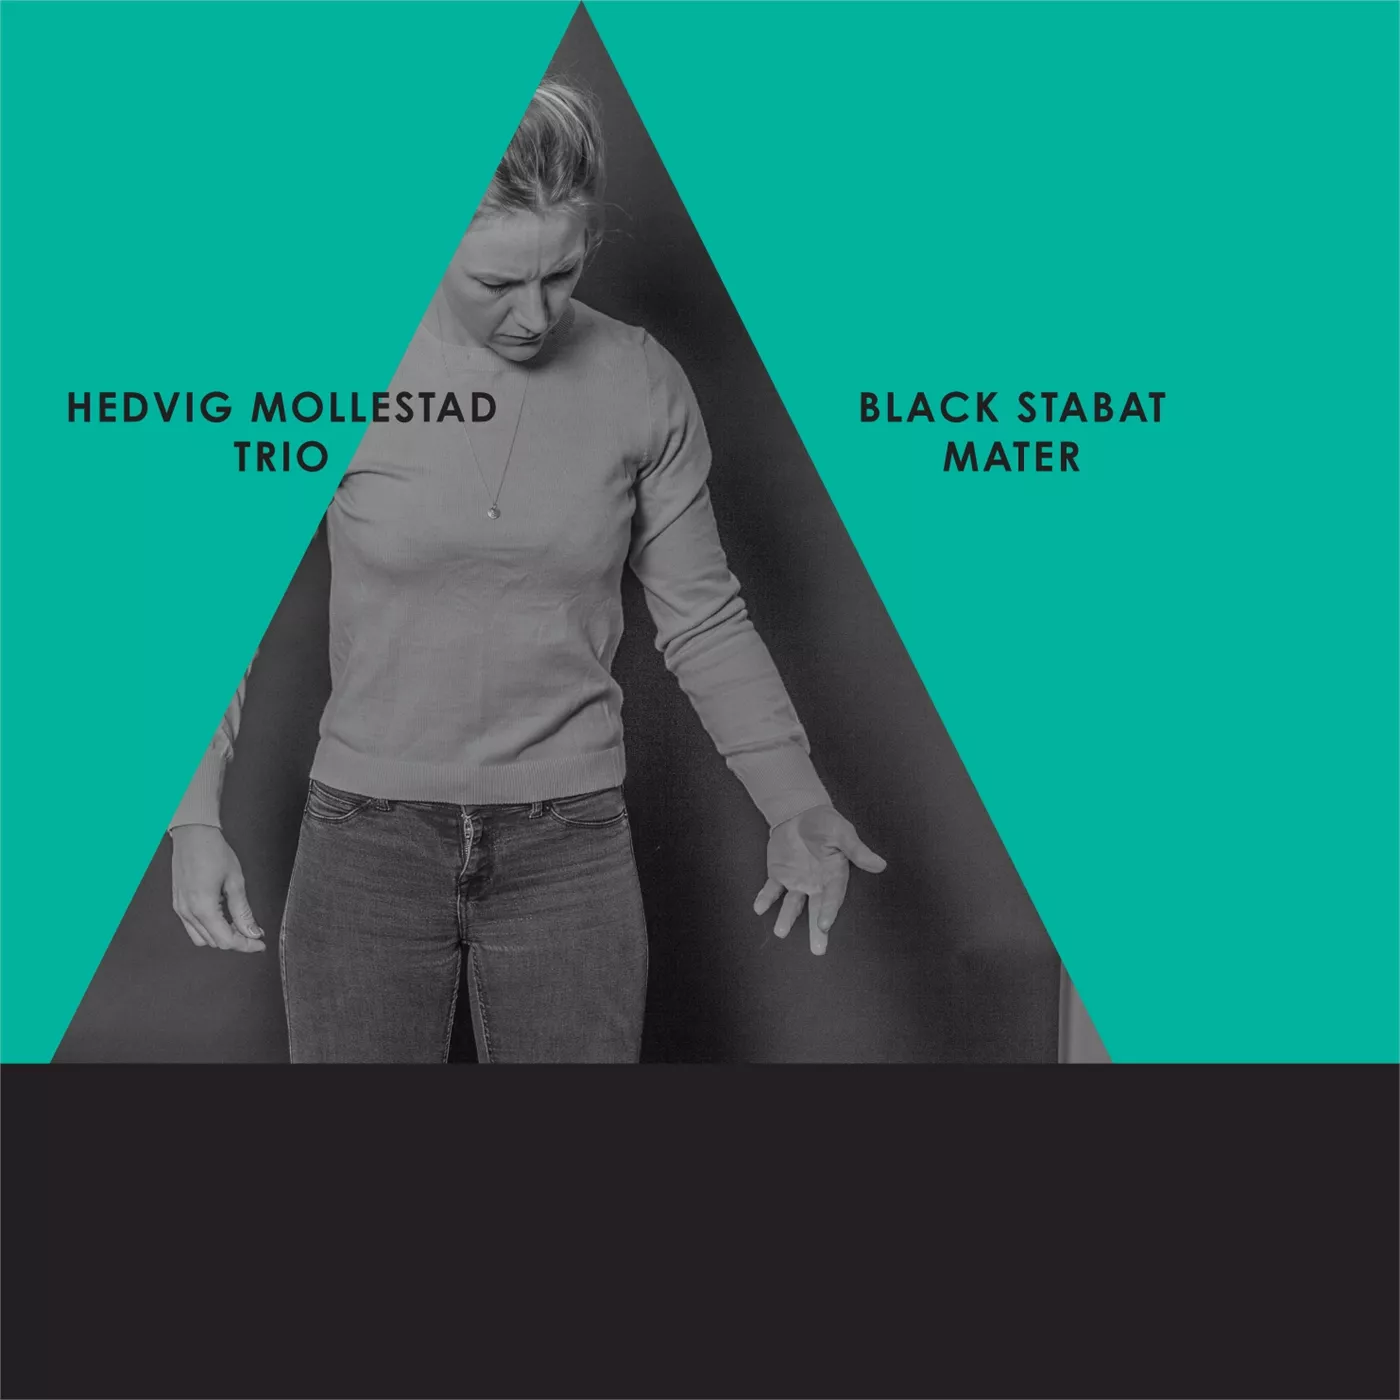 Black Stabat Mater - Hedvig Mollestad Trio